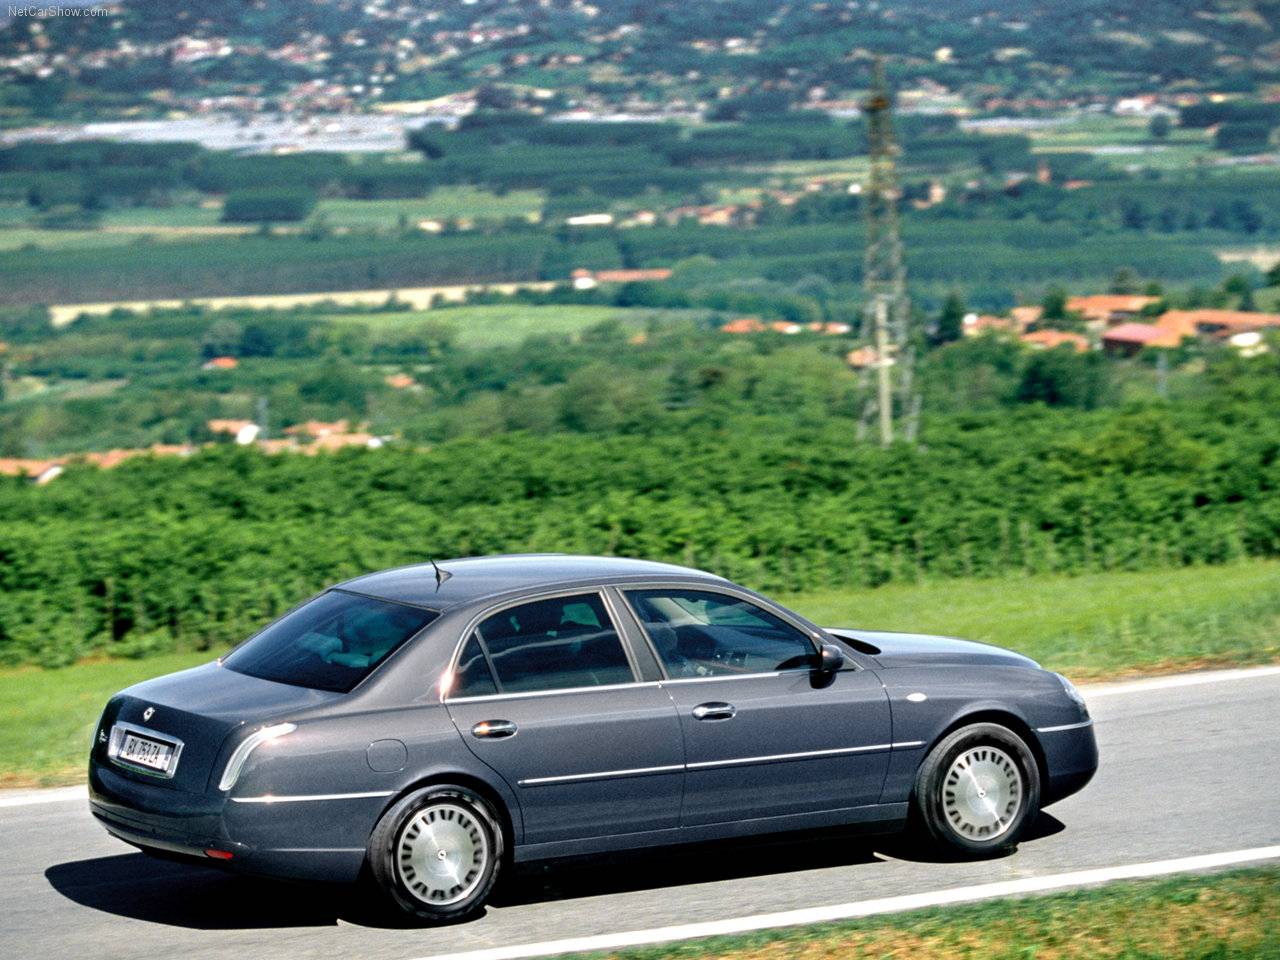 Lancia - Auto twenty-first century: 2003 Lancia Thesis 2.4 20v JTD